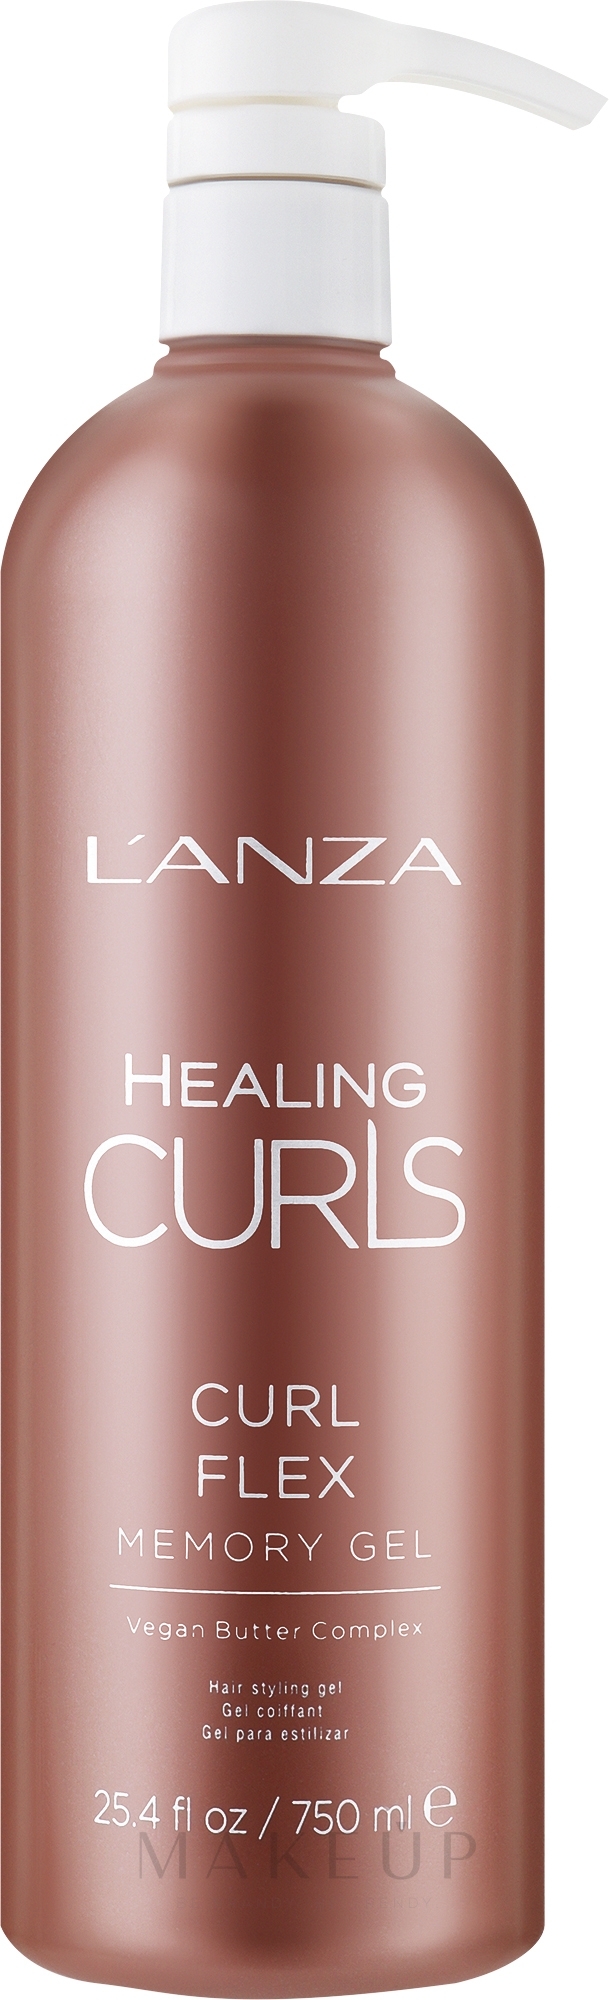 Haargel mit Memory-Effekt - L'anza Curls Curl Flex Memory Gel — Bild 750 ml